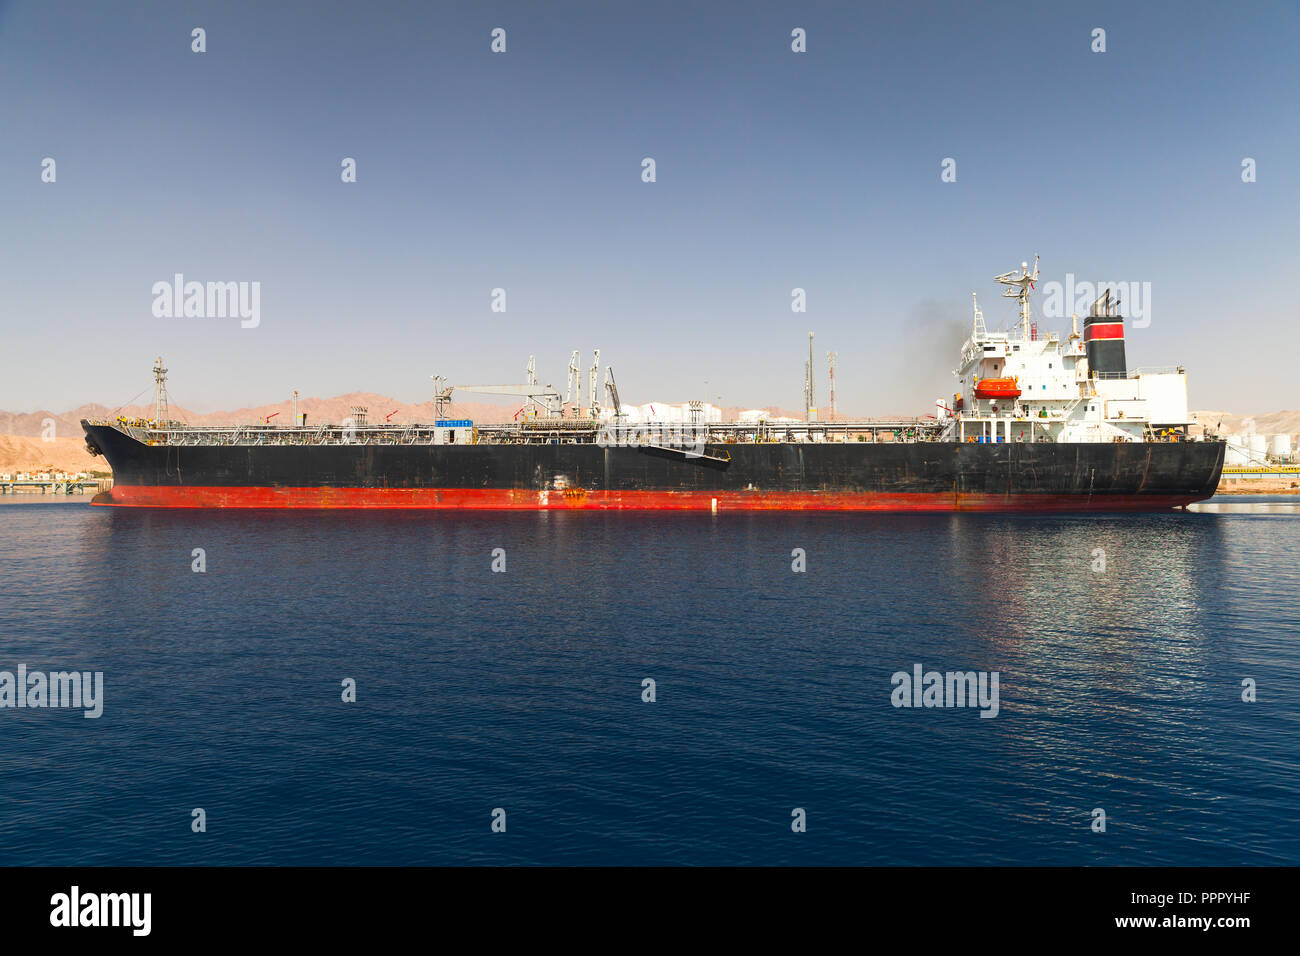 Industrial tanker ship loading in new port of Aqaba, Jordan Stock Photo